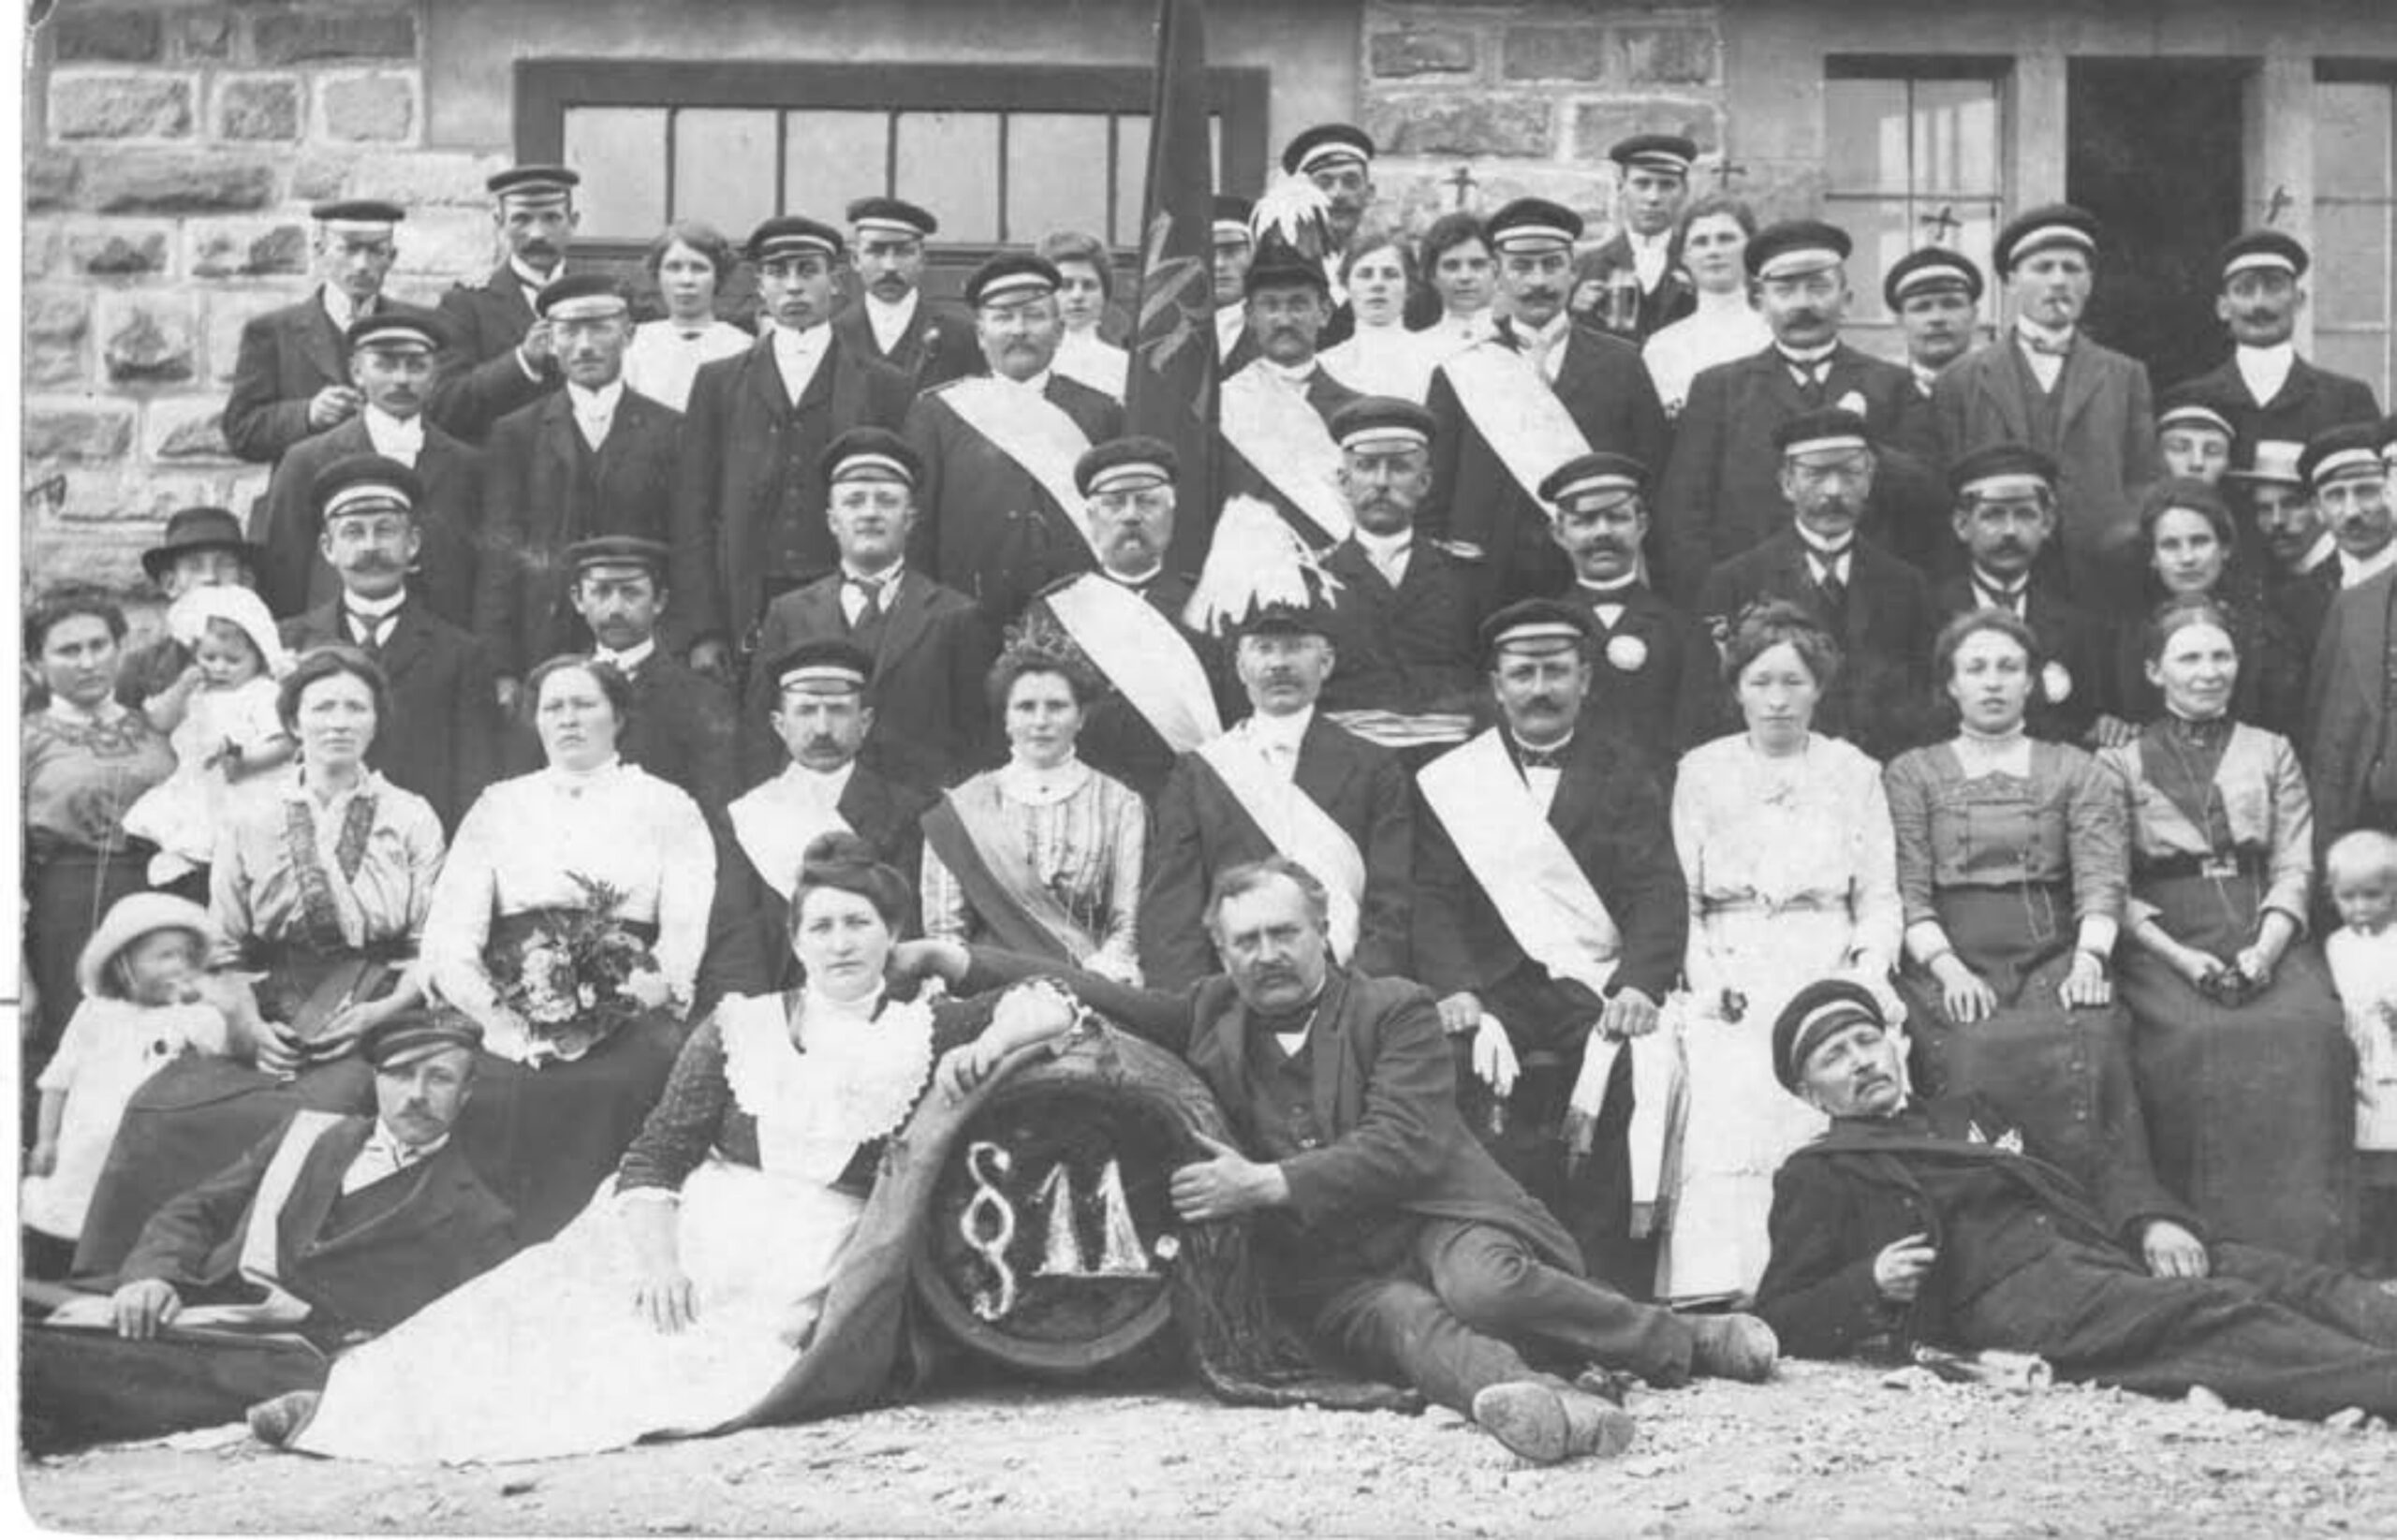 Ein Gruppenfoto in Schwarz-Weiß zeigt die Mitglieder des Vereins und ihre Frauen beim Schützenfest 1914.